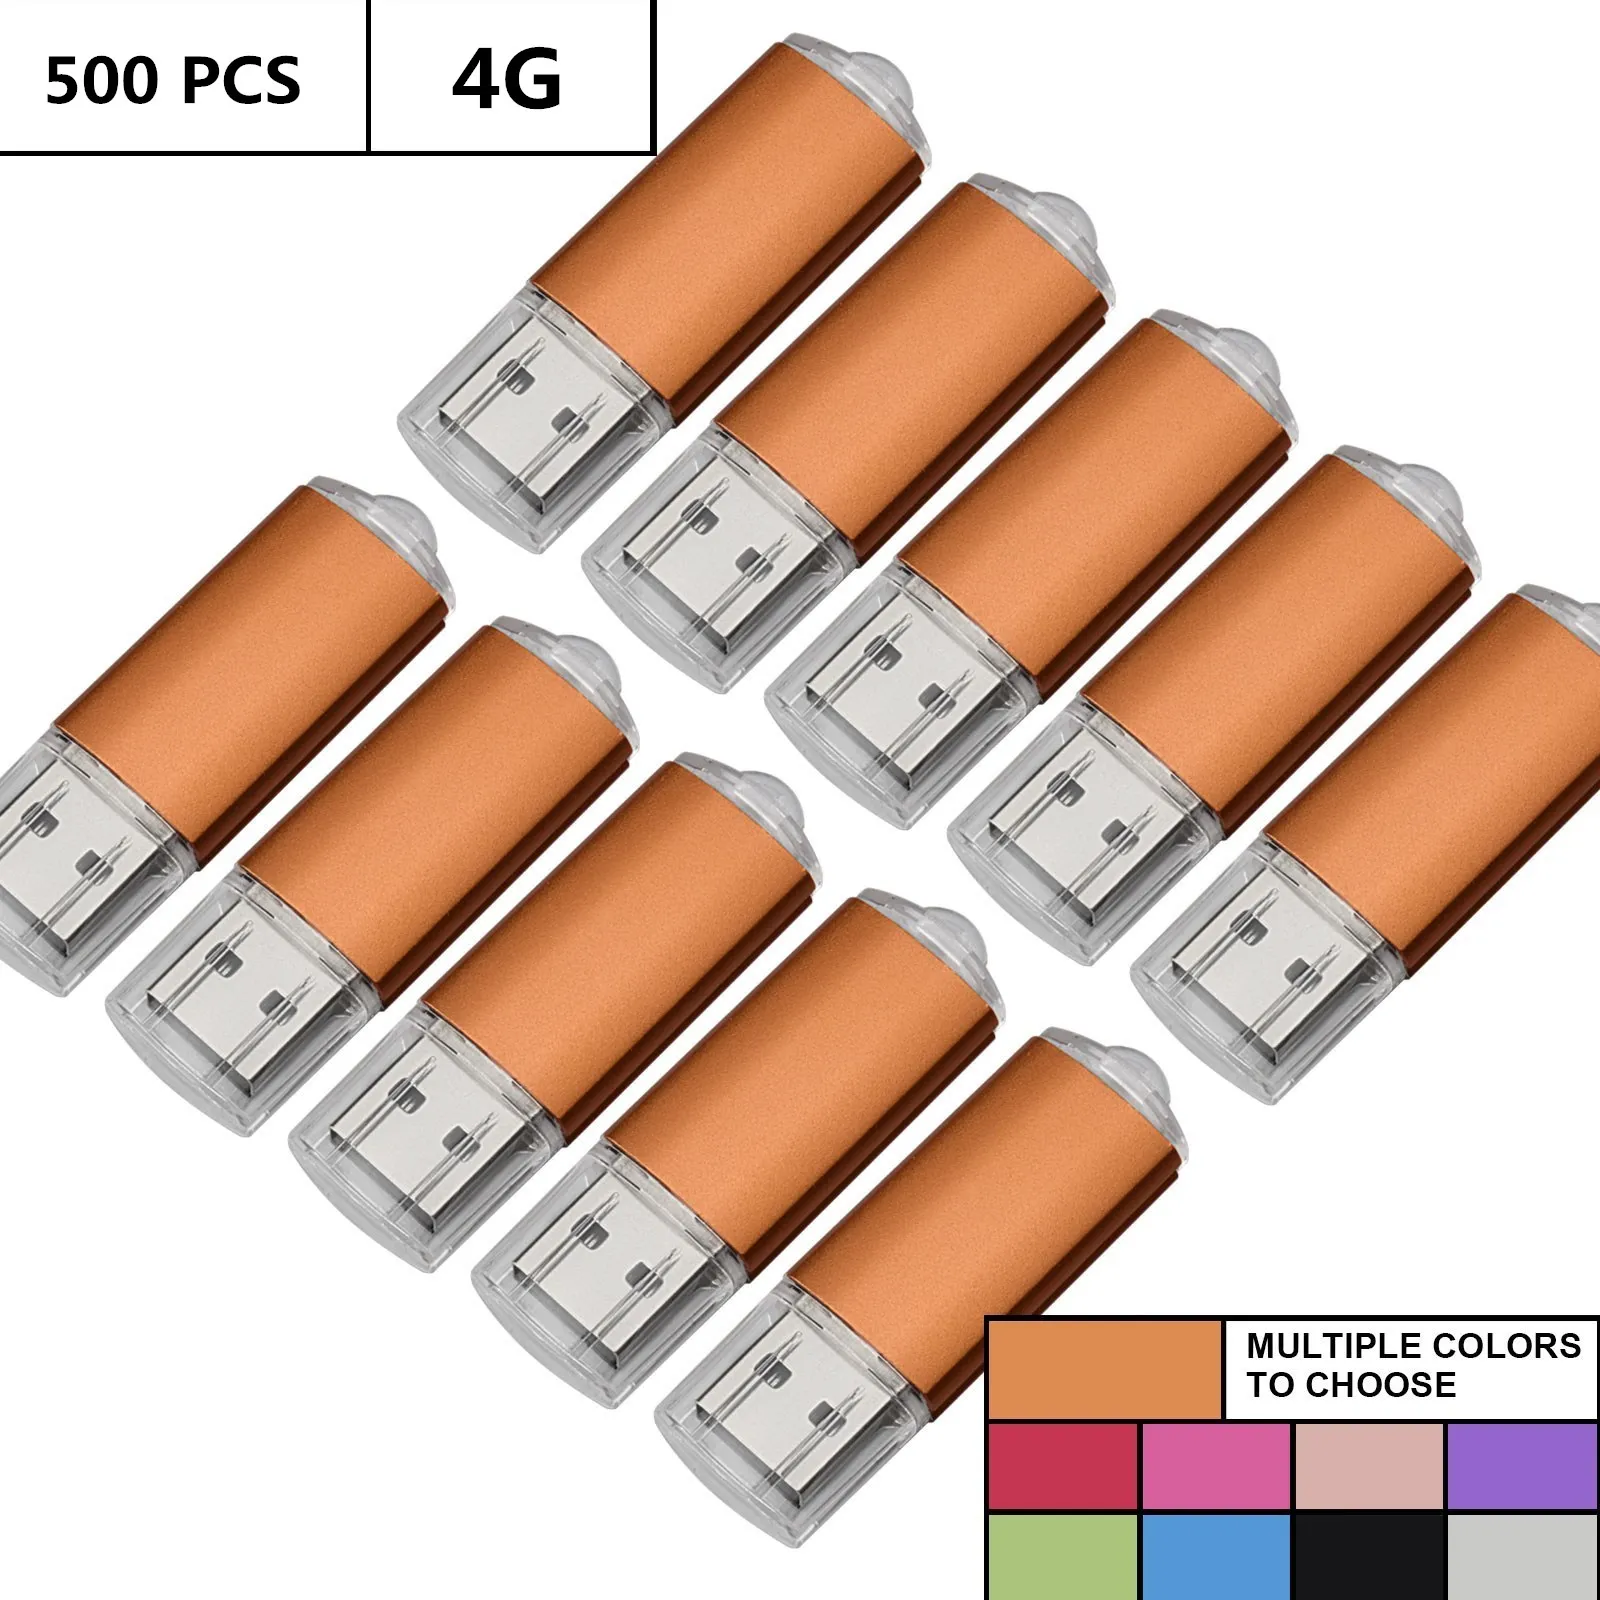 جملة بالجملة 500pcs 4GB USB فلاش محركات مستطيل فلاش محركات أقراص ذاكرة العصي تخزين الإبهام للكمبيوتر مؤشر LED